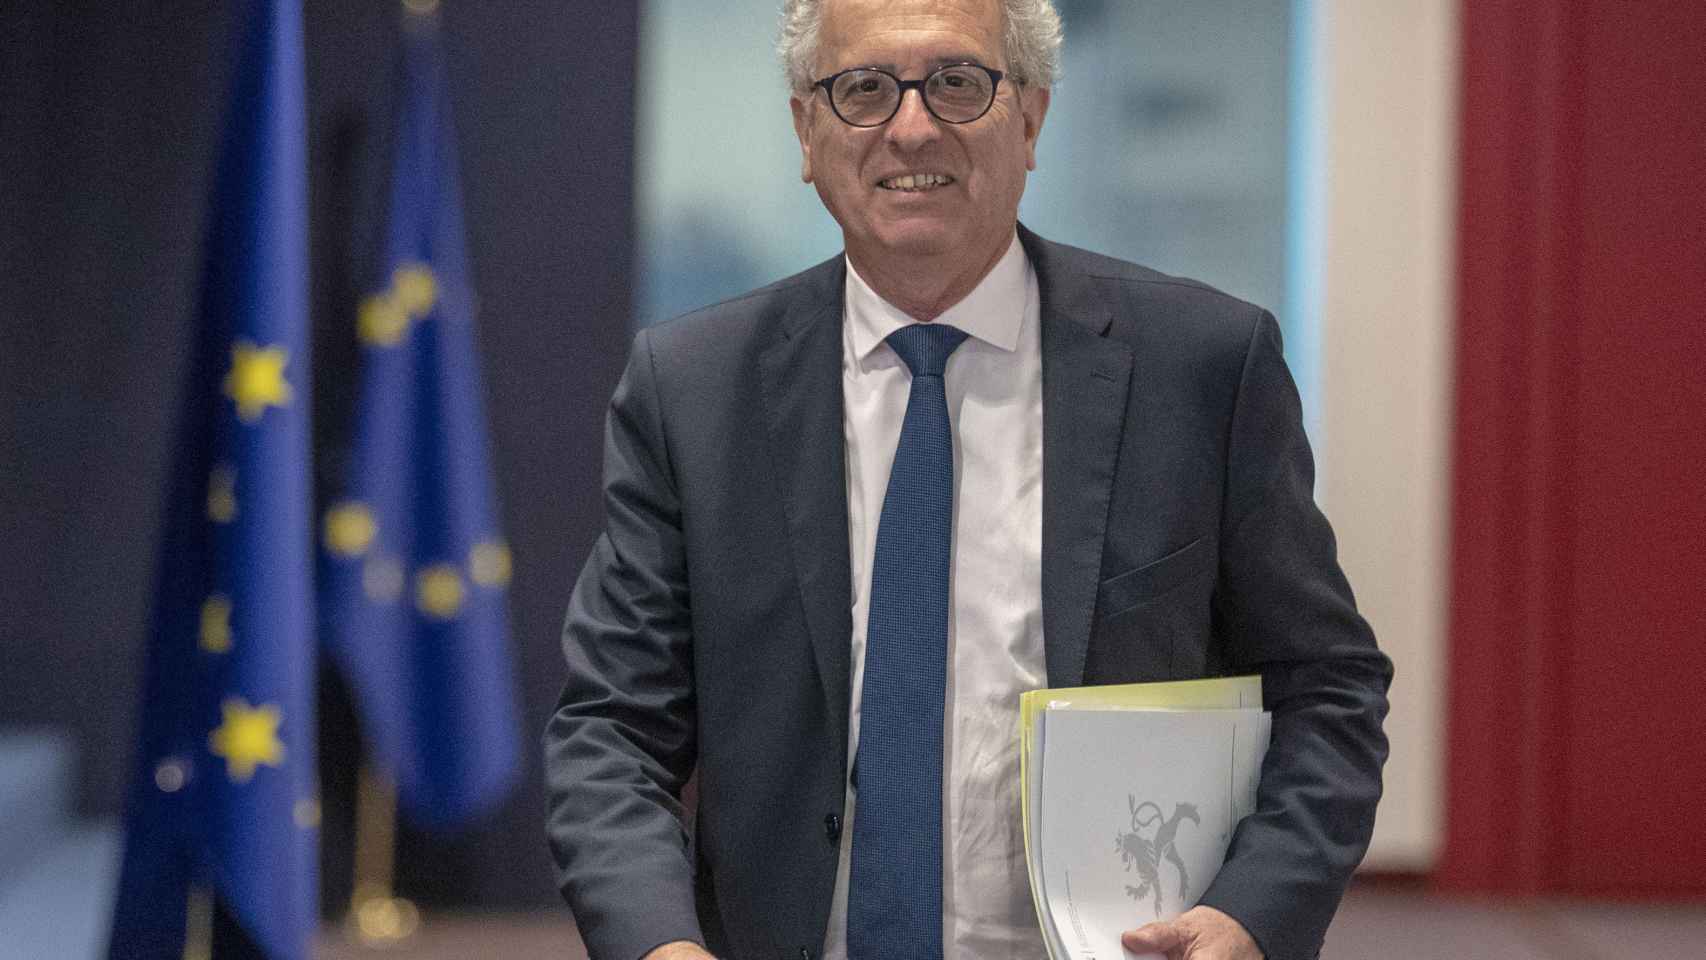 El ministro de Finanzas luxemburgués, Pierre Gramegna, es uno de los veteranos del Eurogrupo